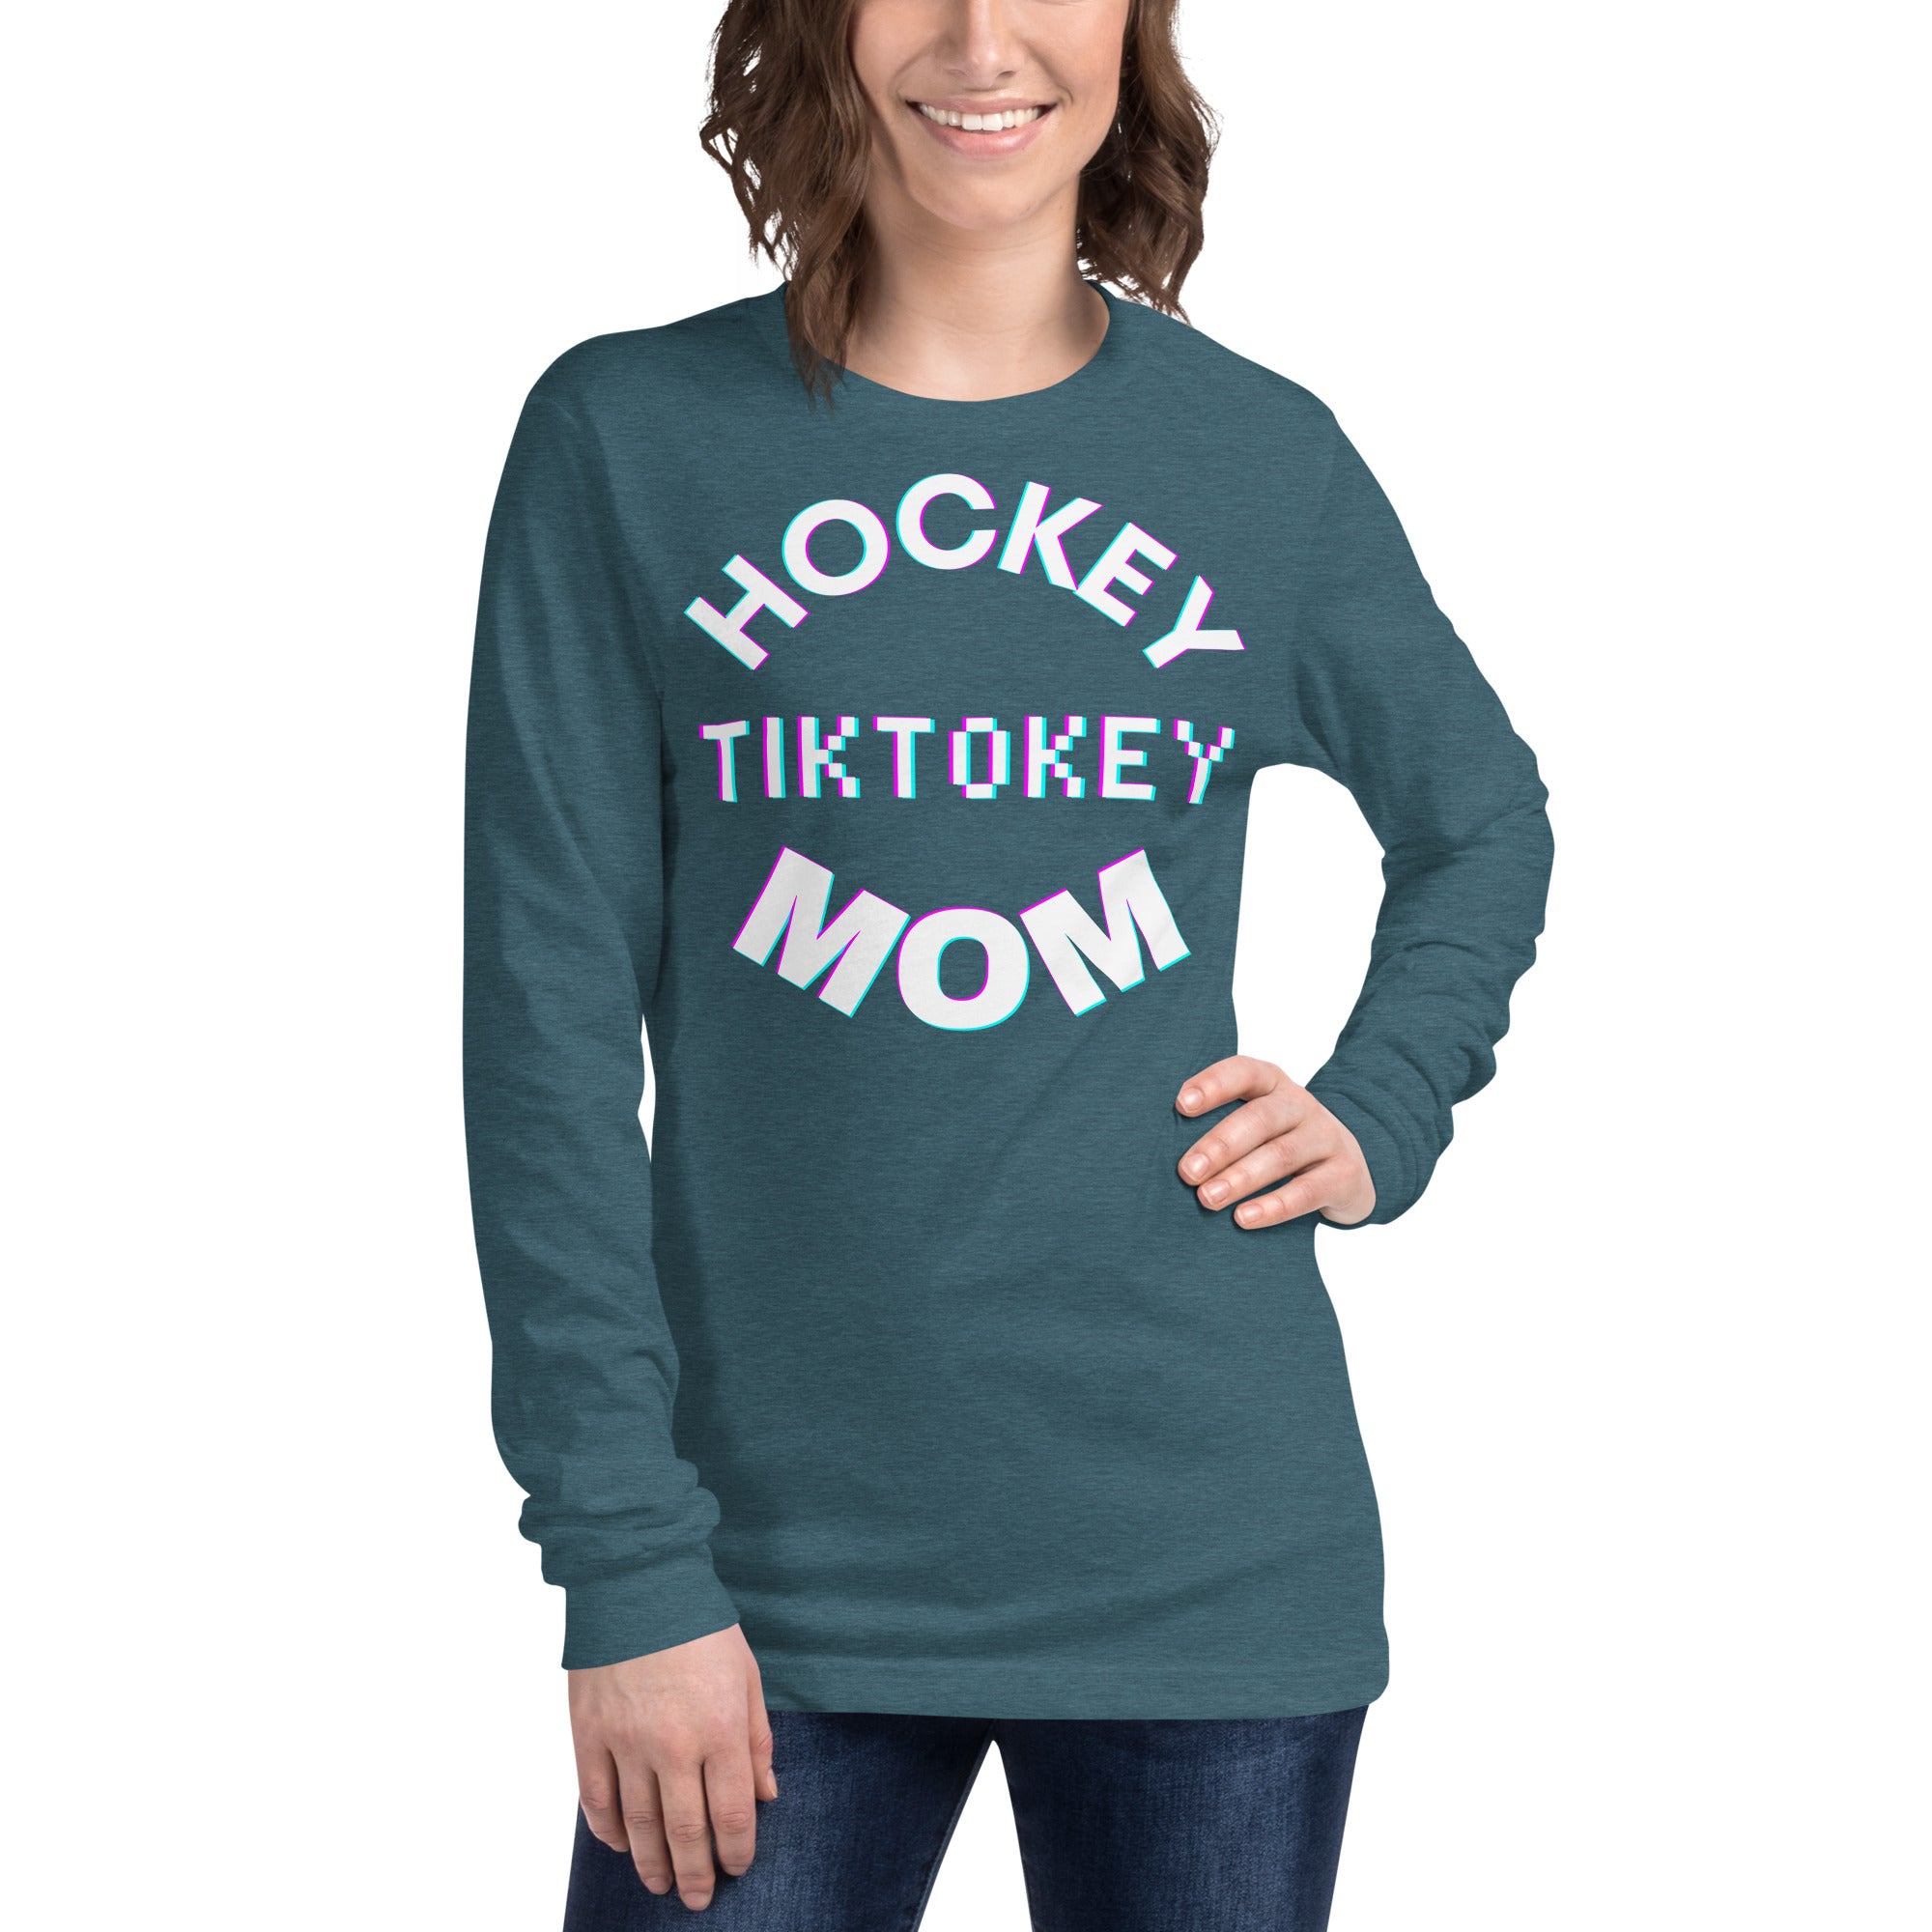 Hockey Tiktokey Women's Select Long Sleeve